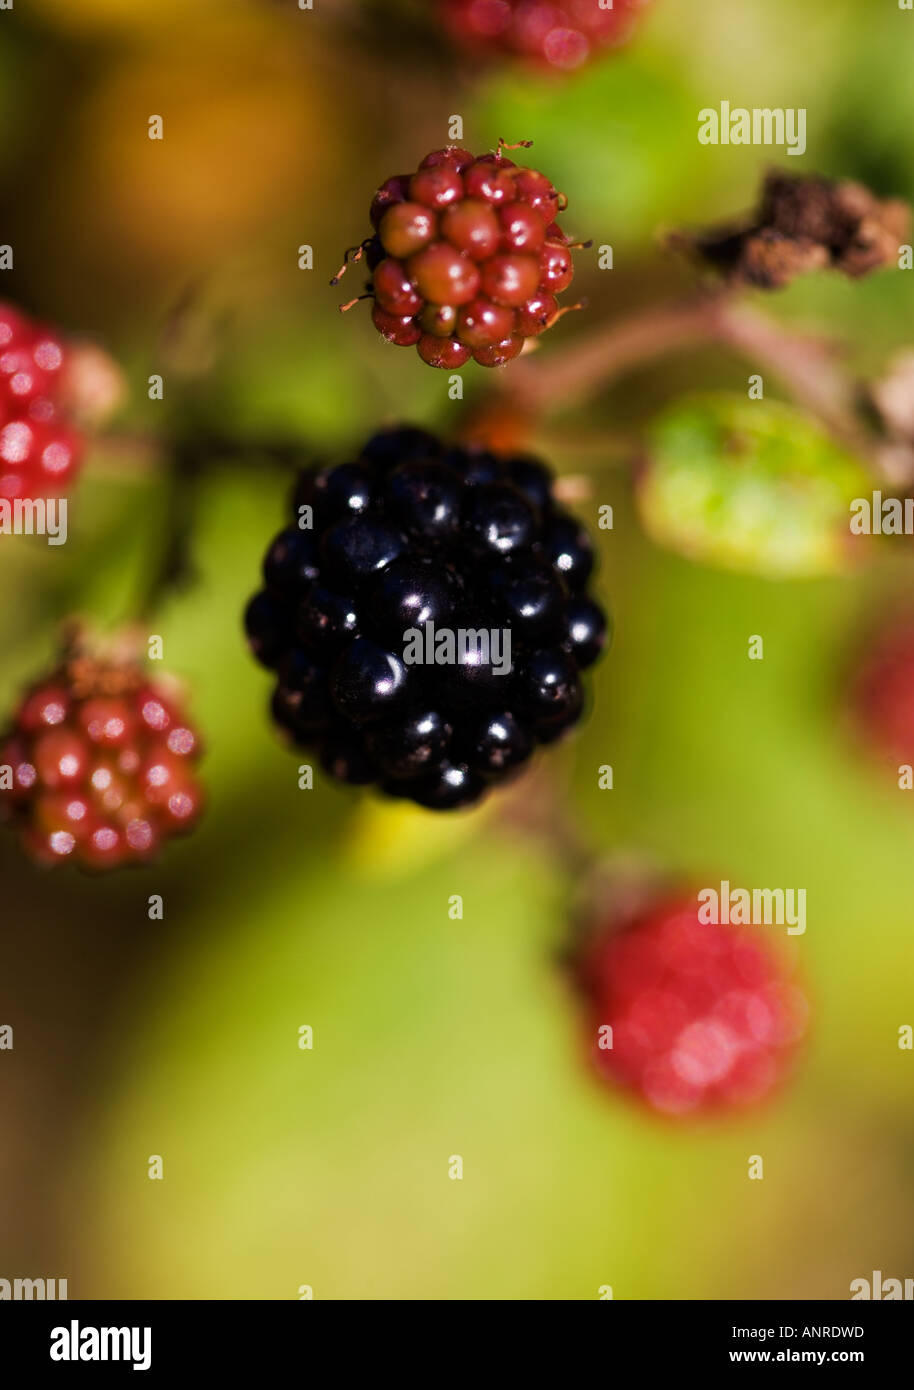 COMMON NAME: Blackberry LATIN NAME: Rubus Stock Photo